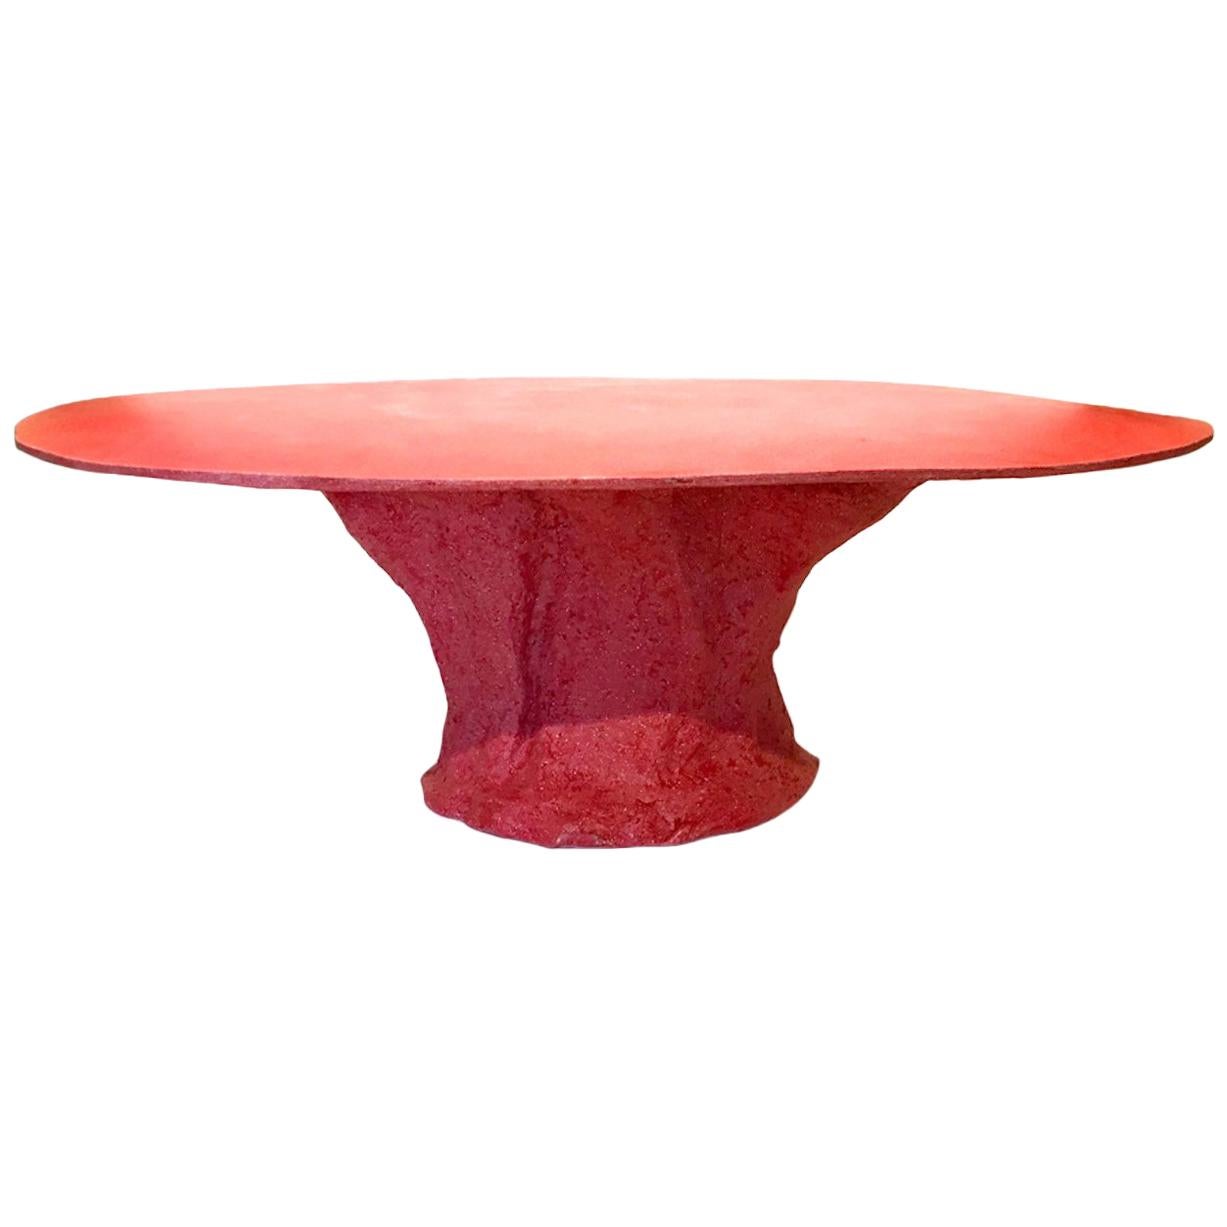 Giovanni Minelli Table Model Kernel Unique Piece, Italy